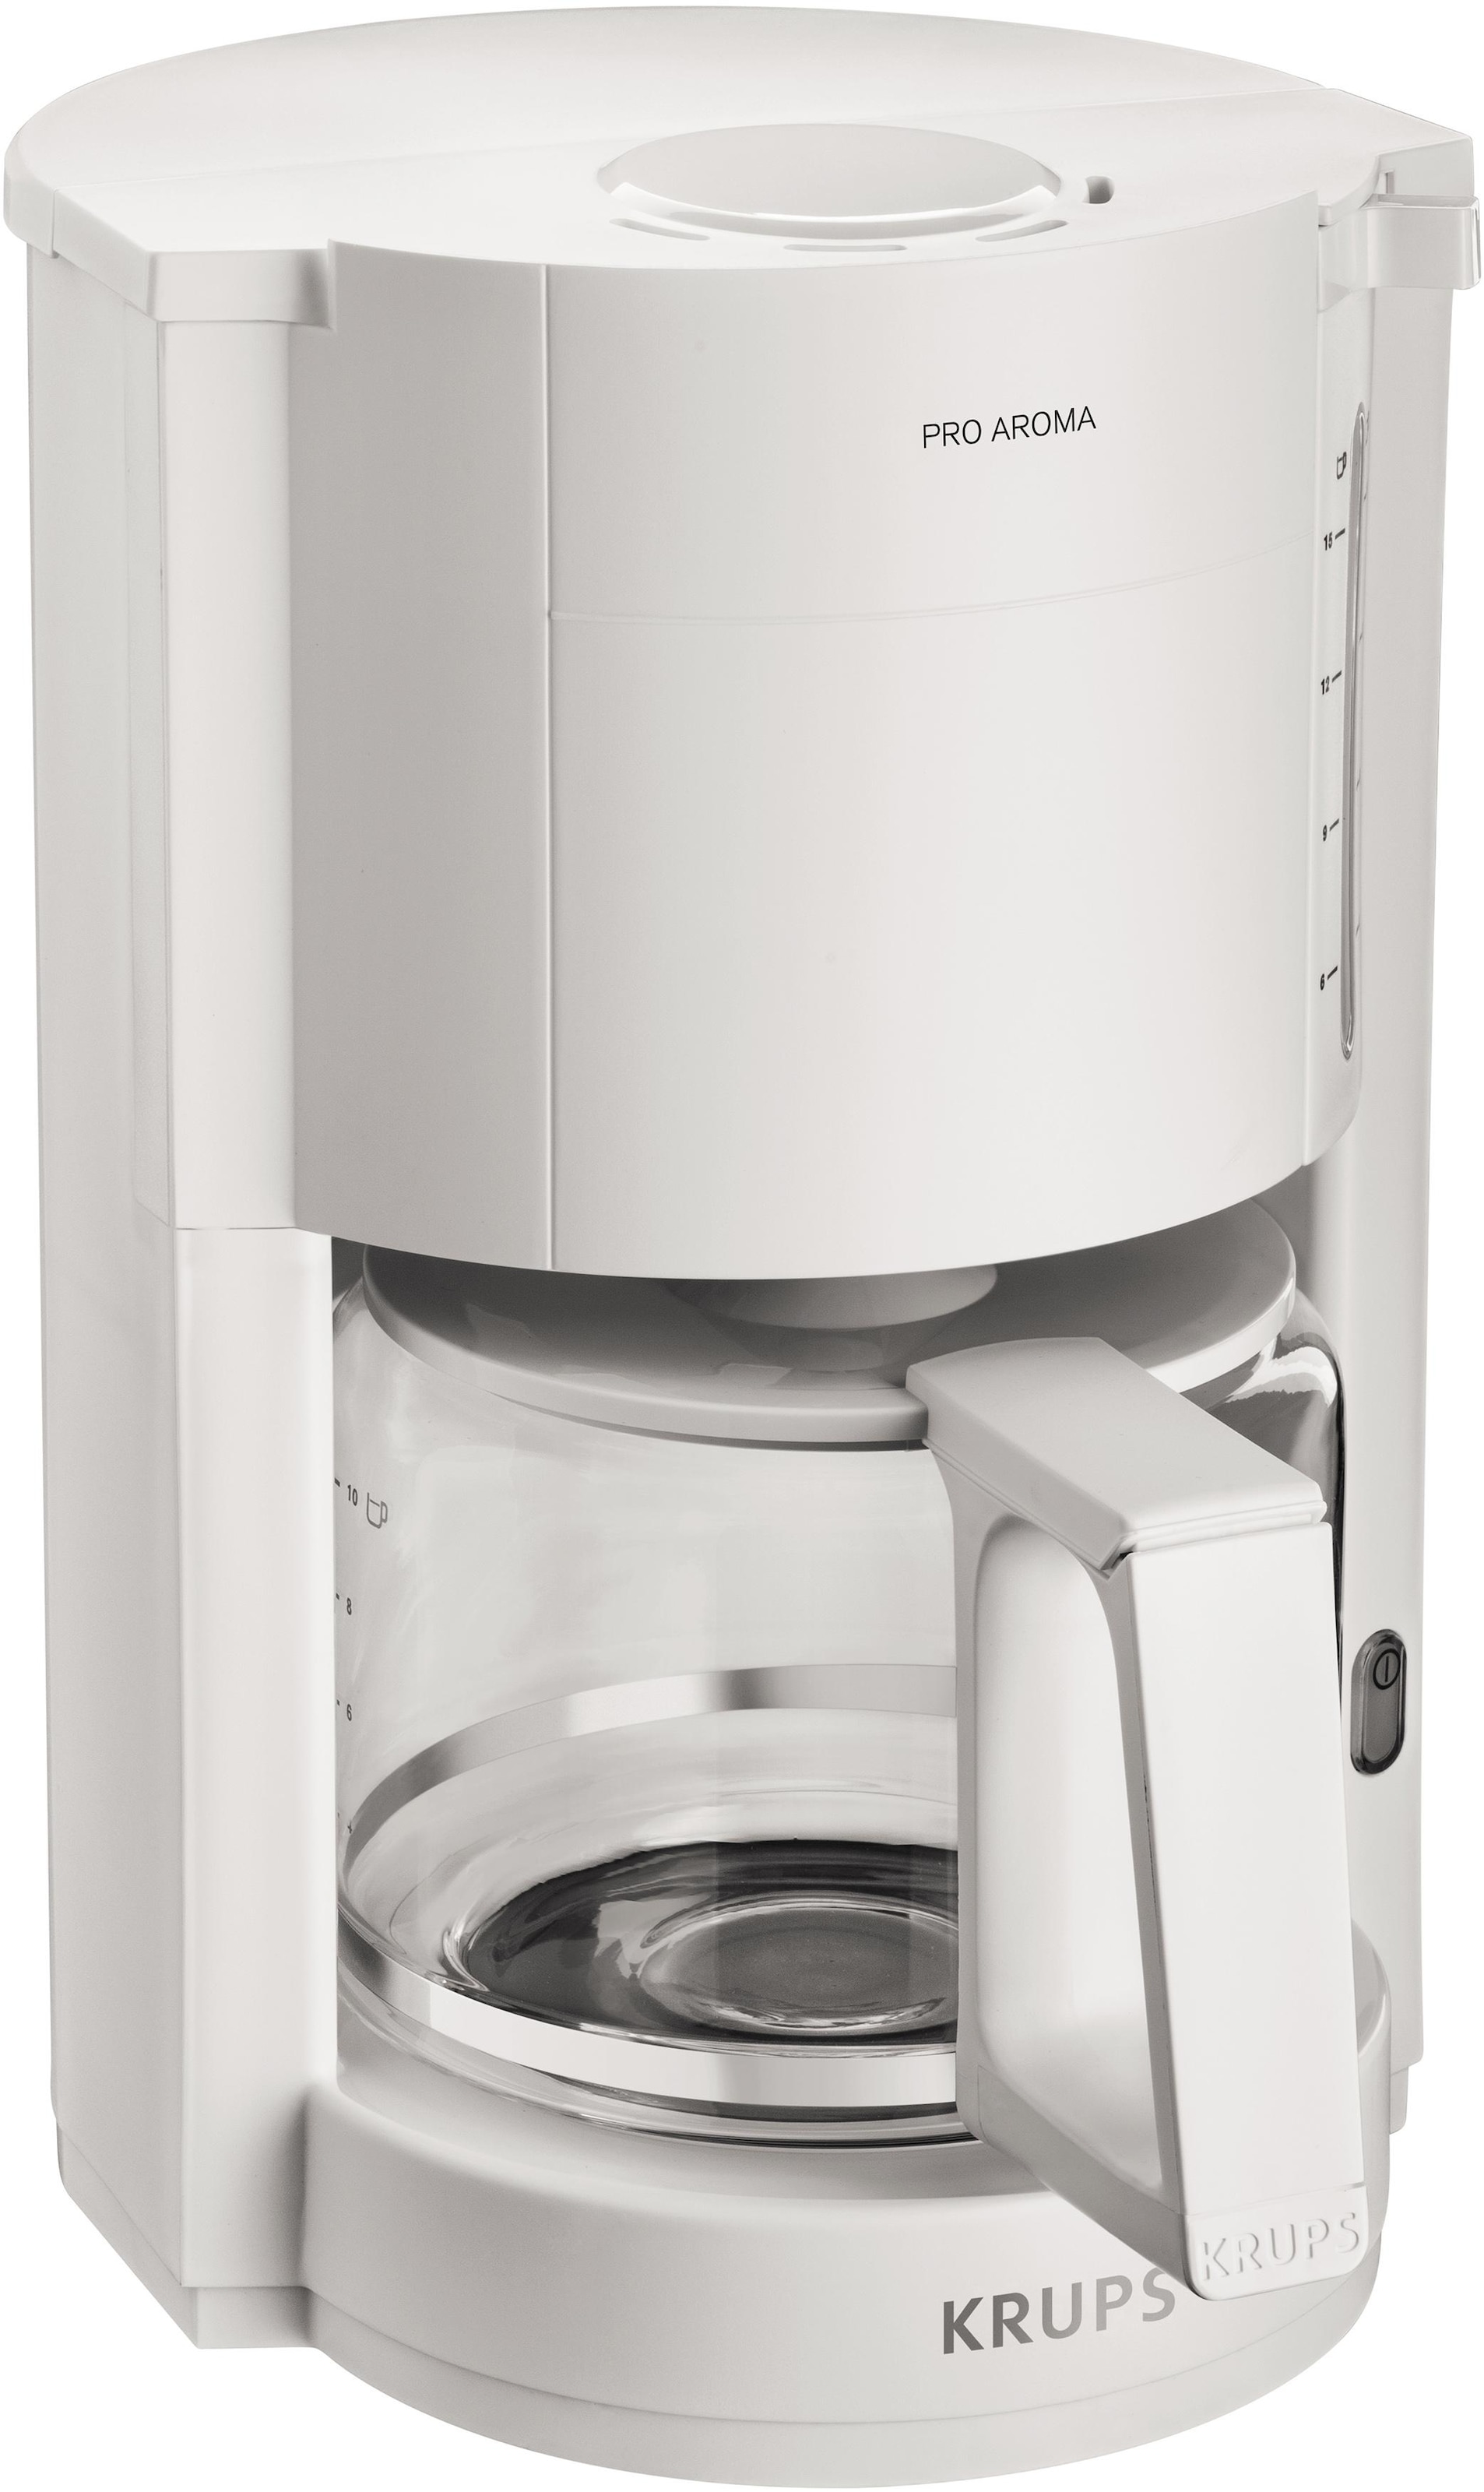 Krups Filterkaffeemaschine »F30901 Pro Aroma«, Warmhaltefunktion,  Automatische Abschaltung, 1050 W jetzt bei OTTO